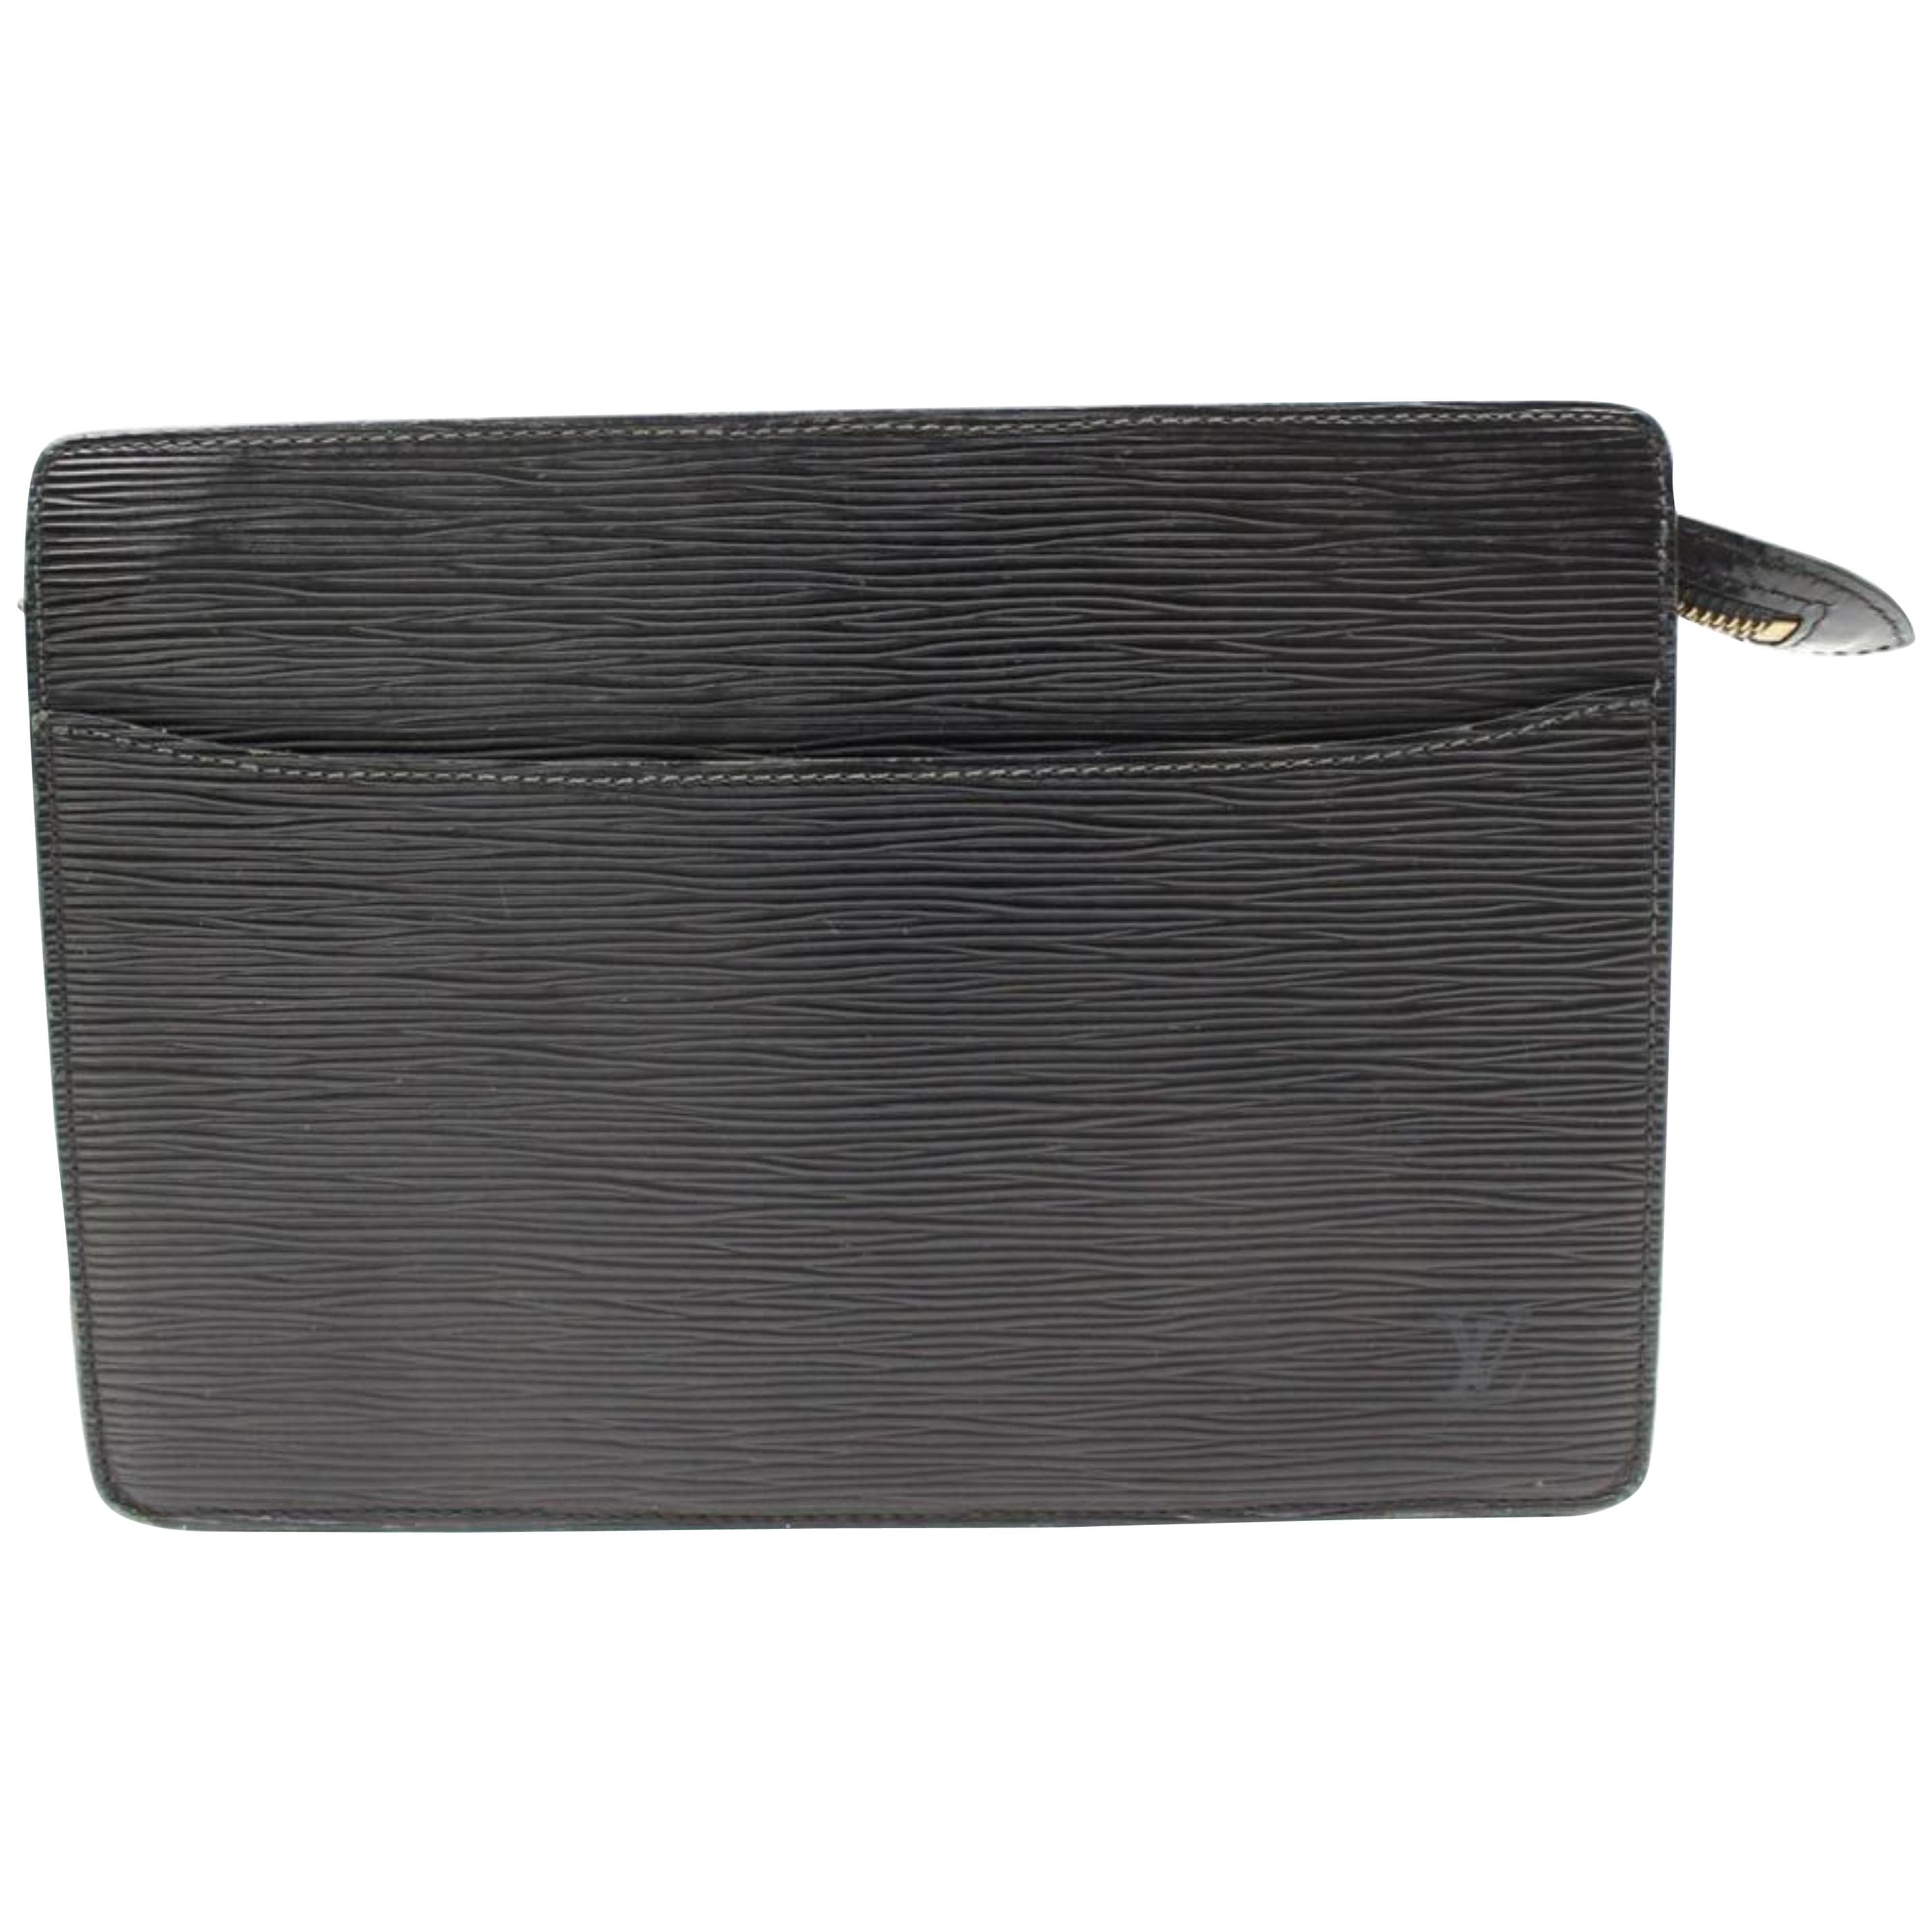 Louis Vuitton Pochette Noir Epi Homme 865790 Black Leather Clutch For Sale